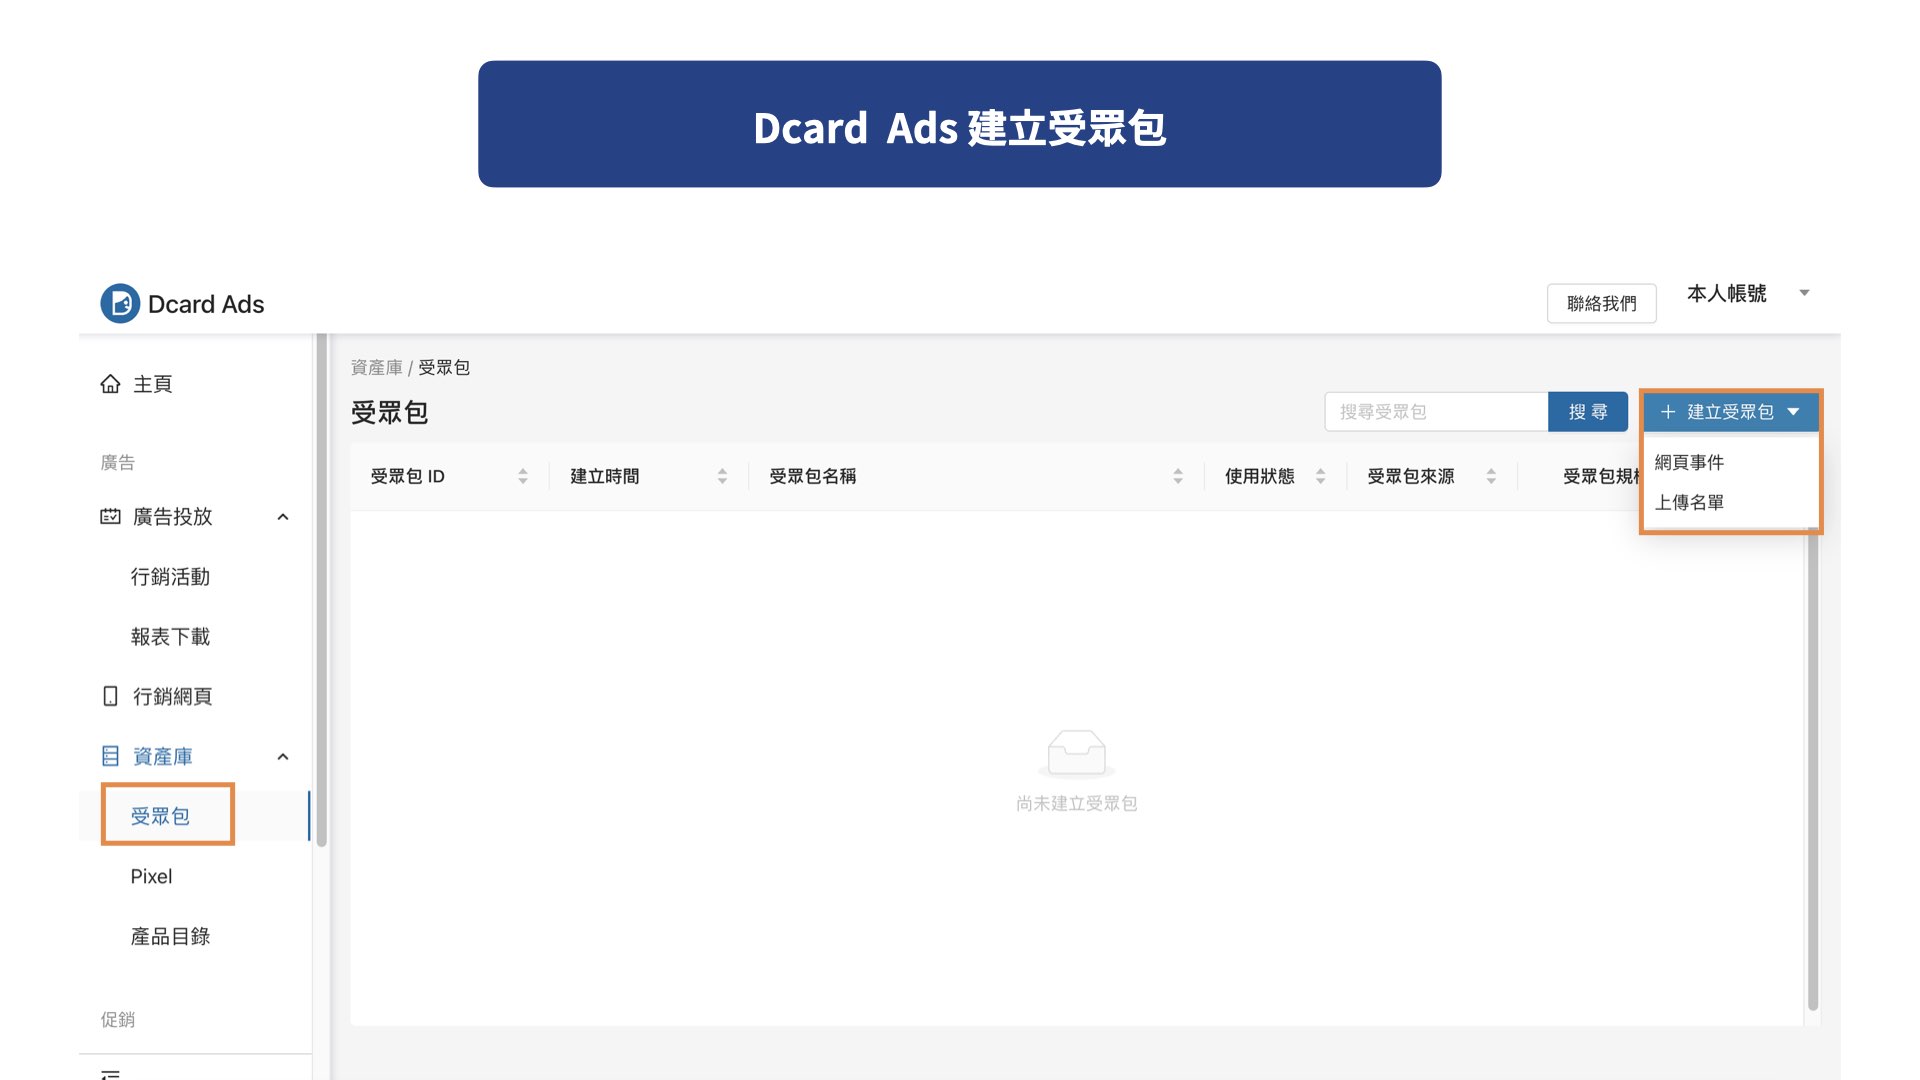 Dcard Ads 建立受眾包